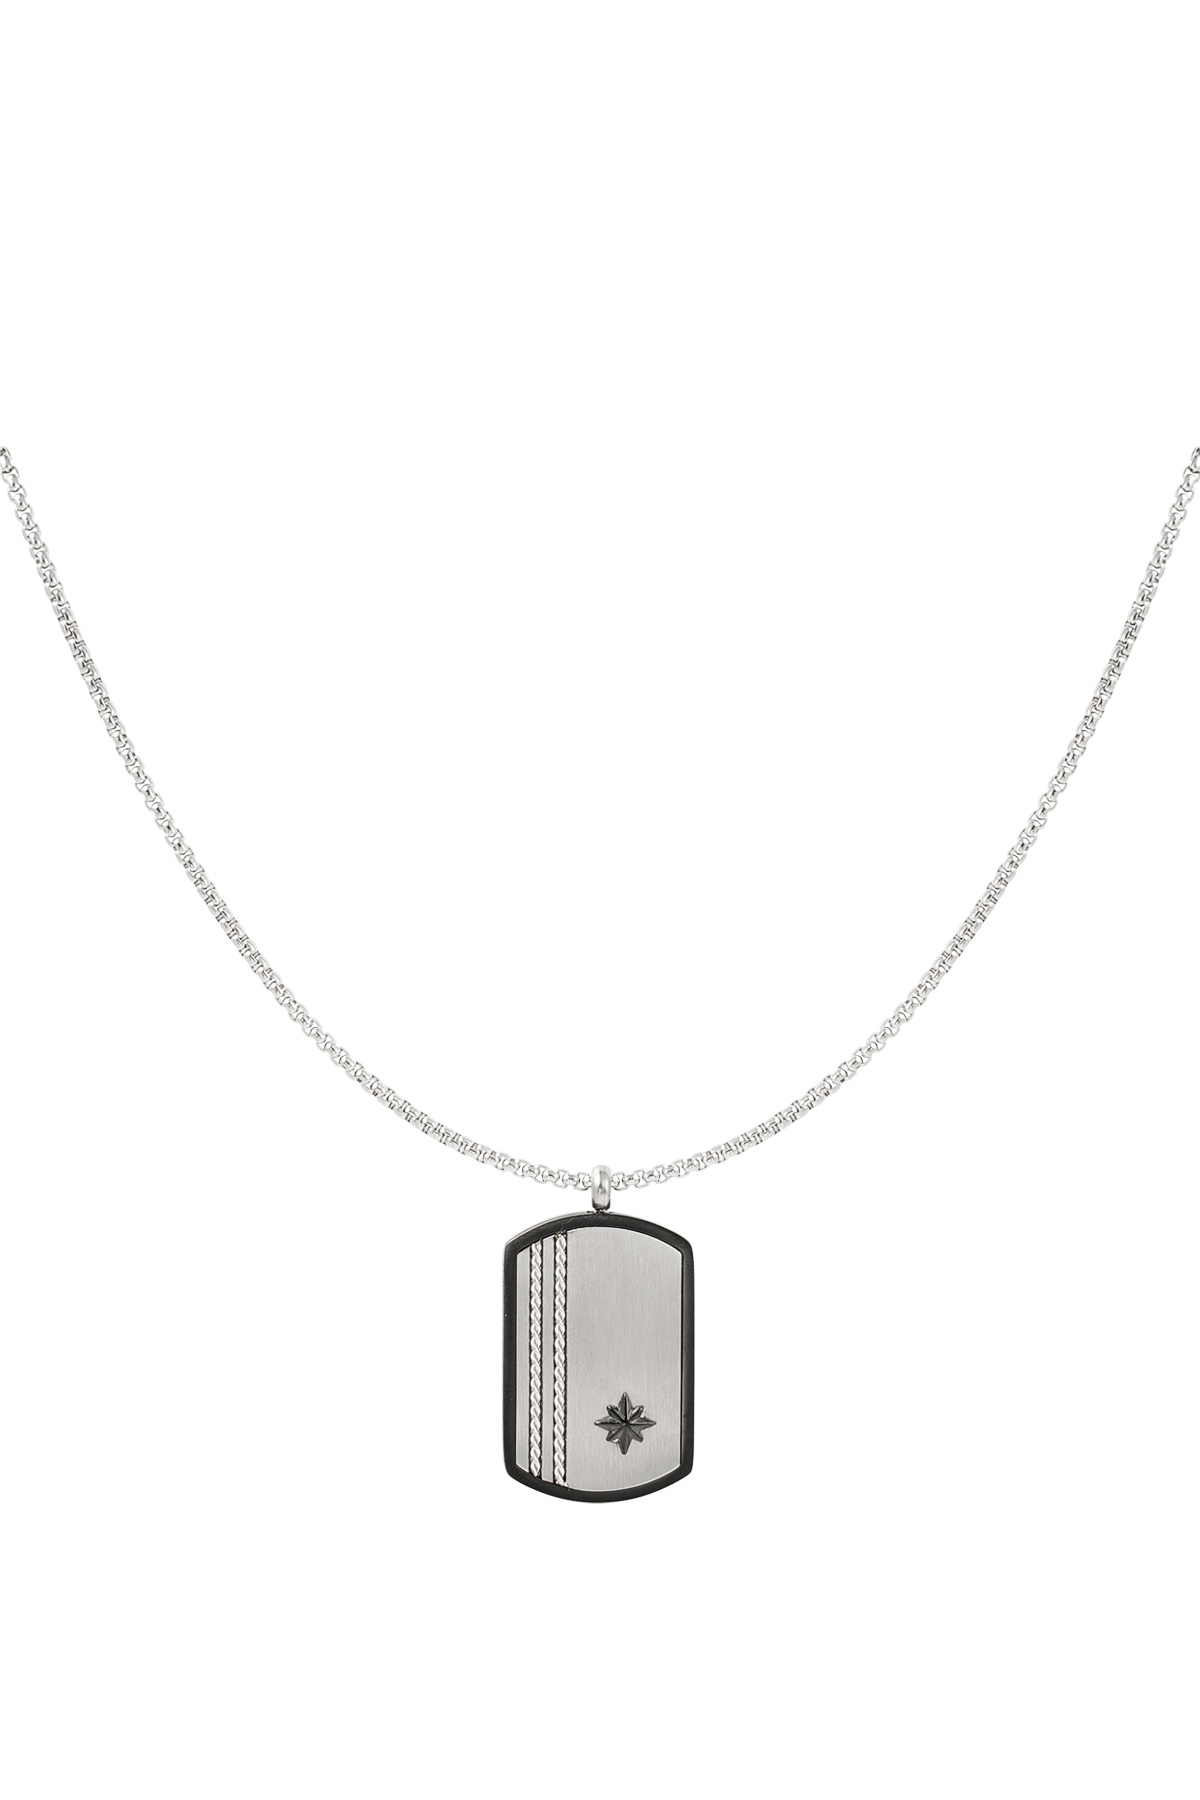 Herren-Halskette mit silbernem Anhänger – Silber